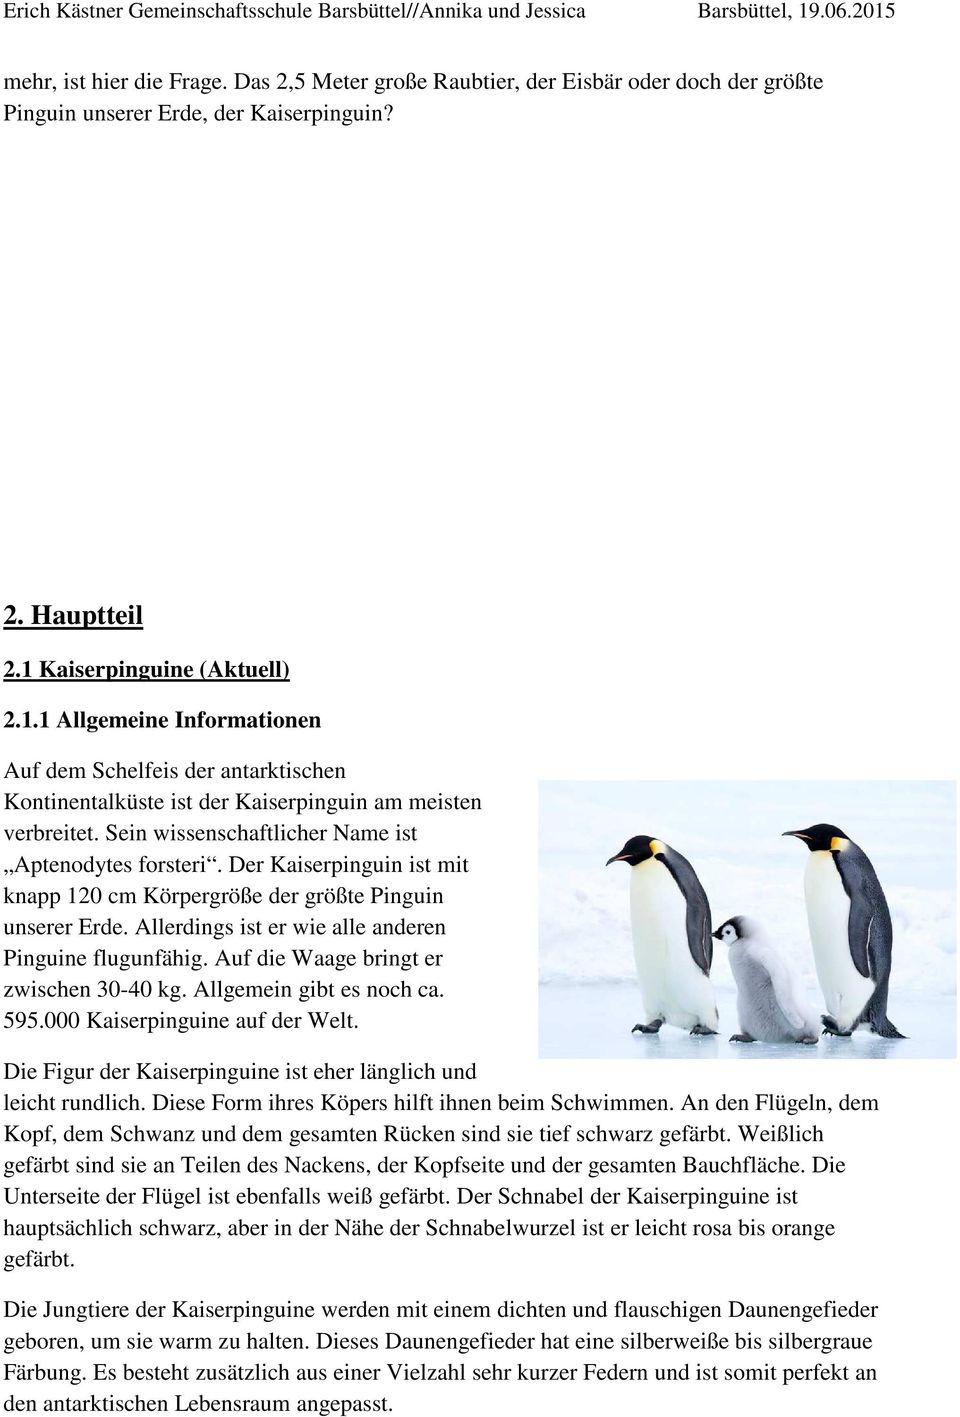 Sein wissenschaftlicher Name ist Aptenodytes forsteri. Der Kaiserpinguin ist mit knapp 120 cm Körpergröße der größte Pinguin unserer Erde. Allerdings ist er wie alle anderen Pinguine flugunfähig.